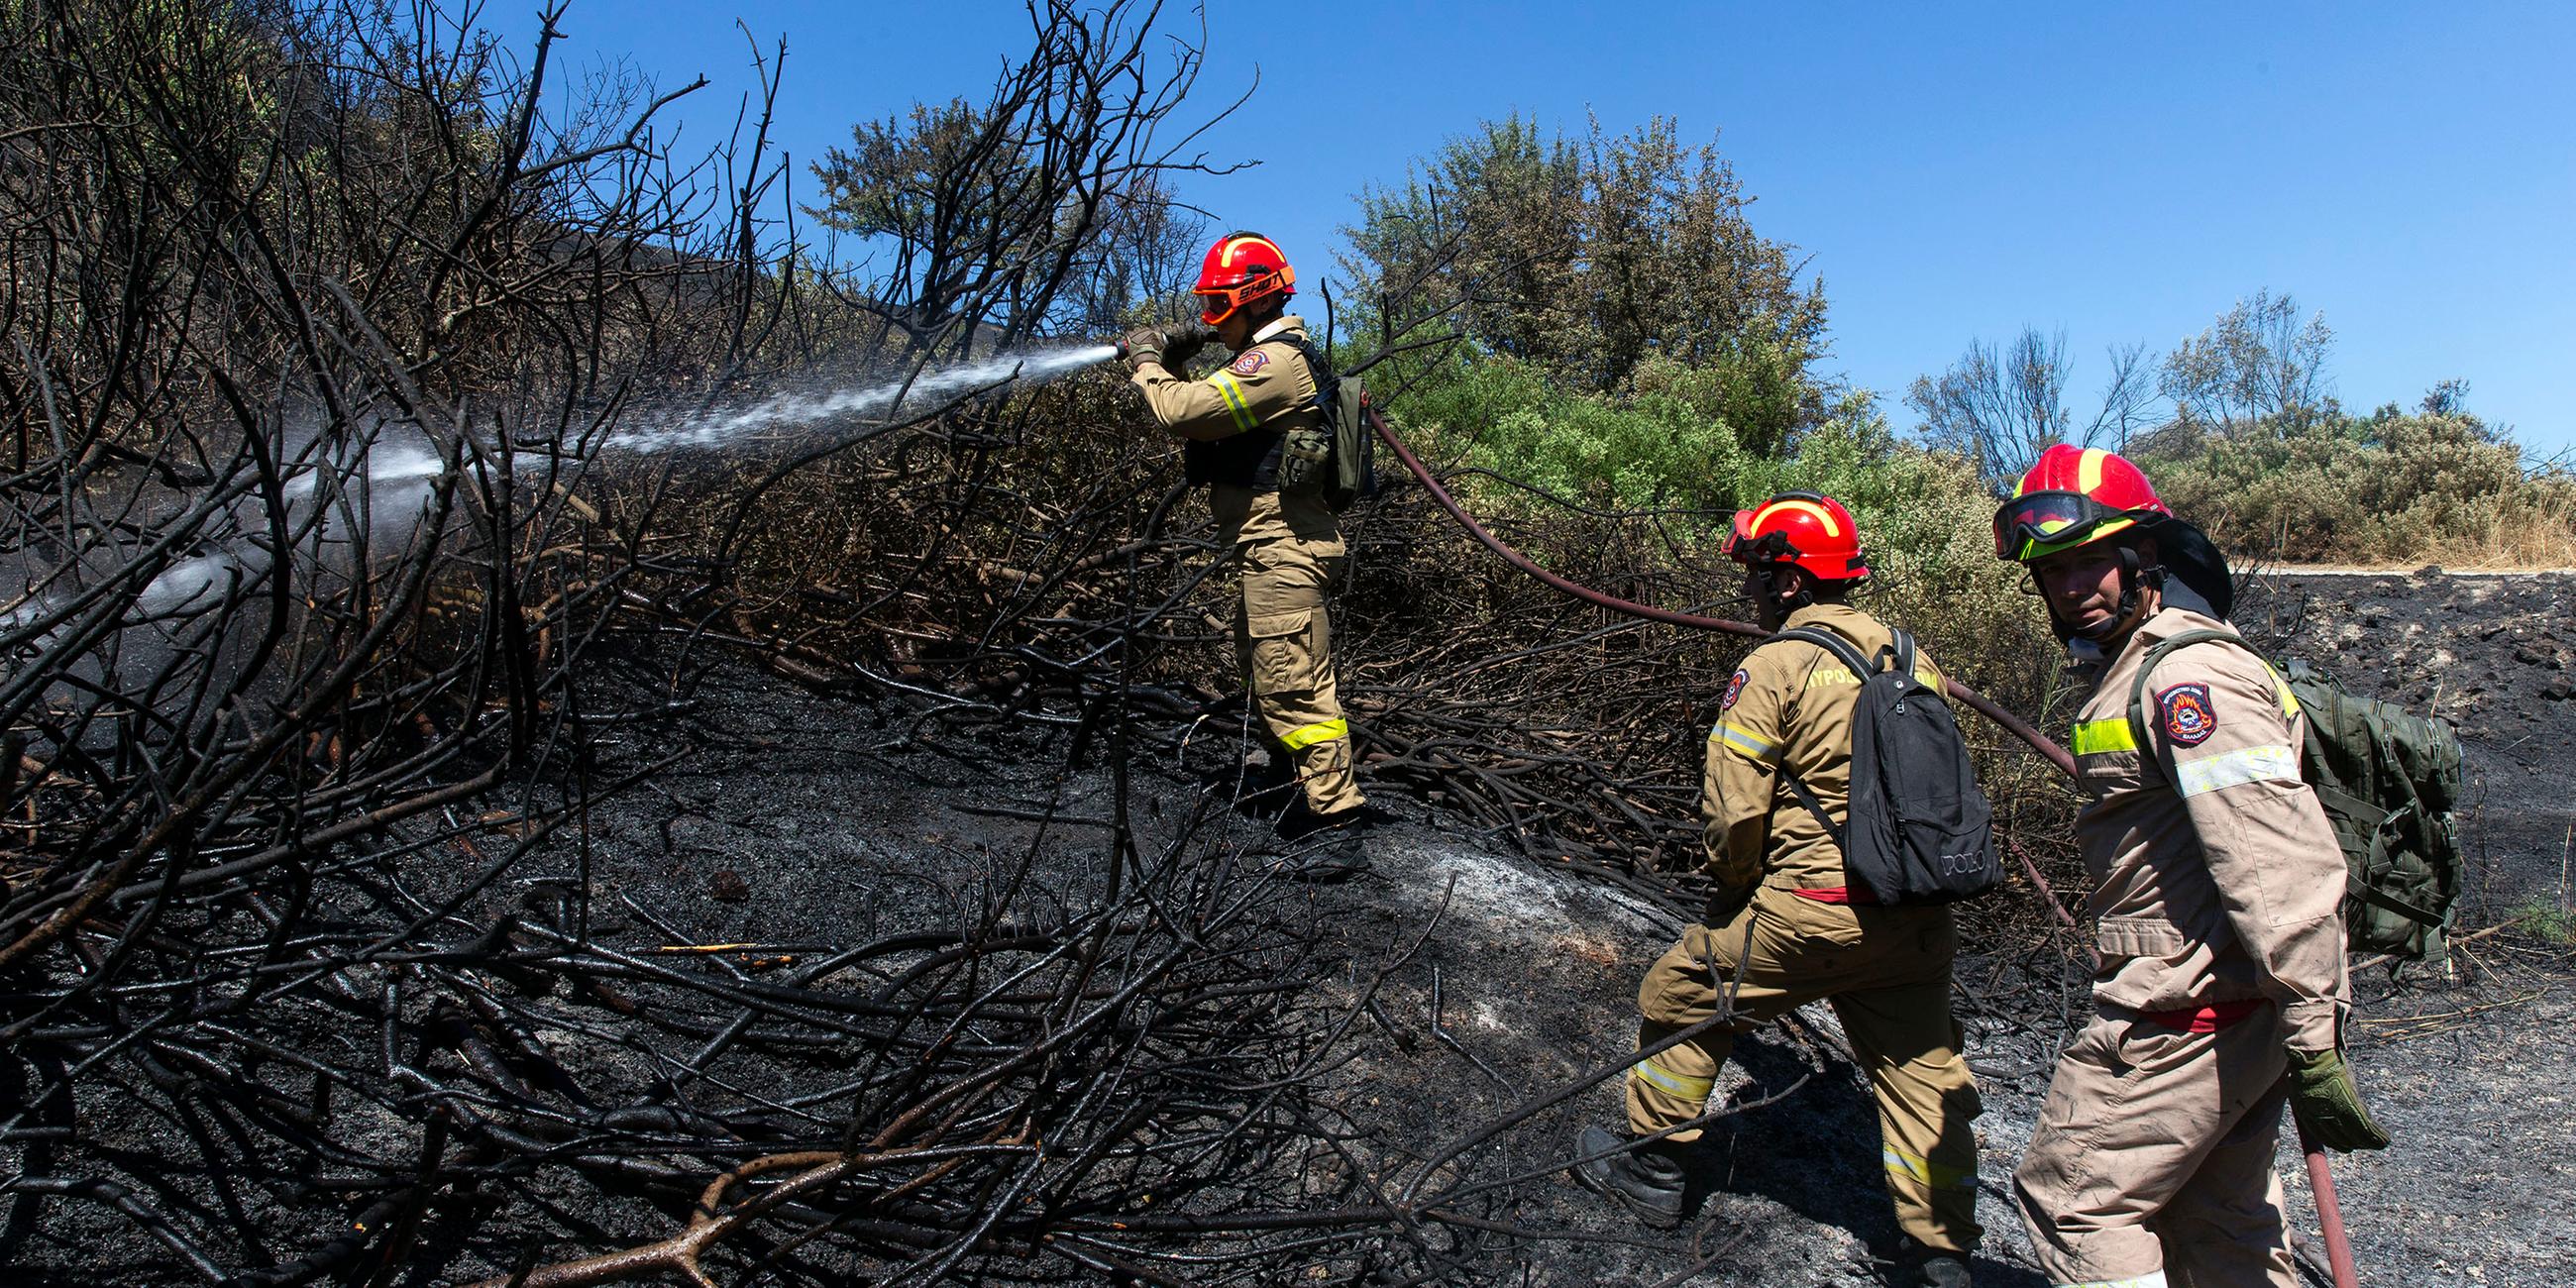  Griechenland, Schimatari: Feuerwehrleute bekämpfen einen Waldbrand.